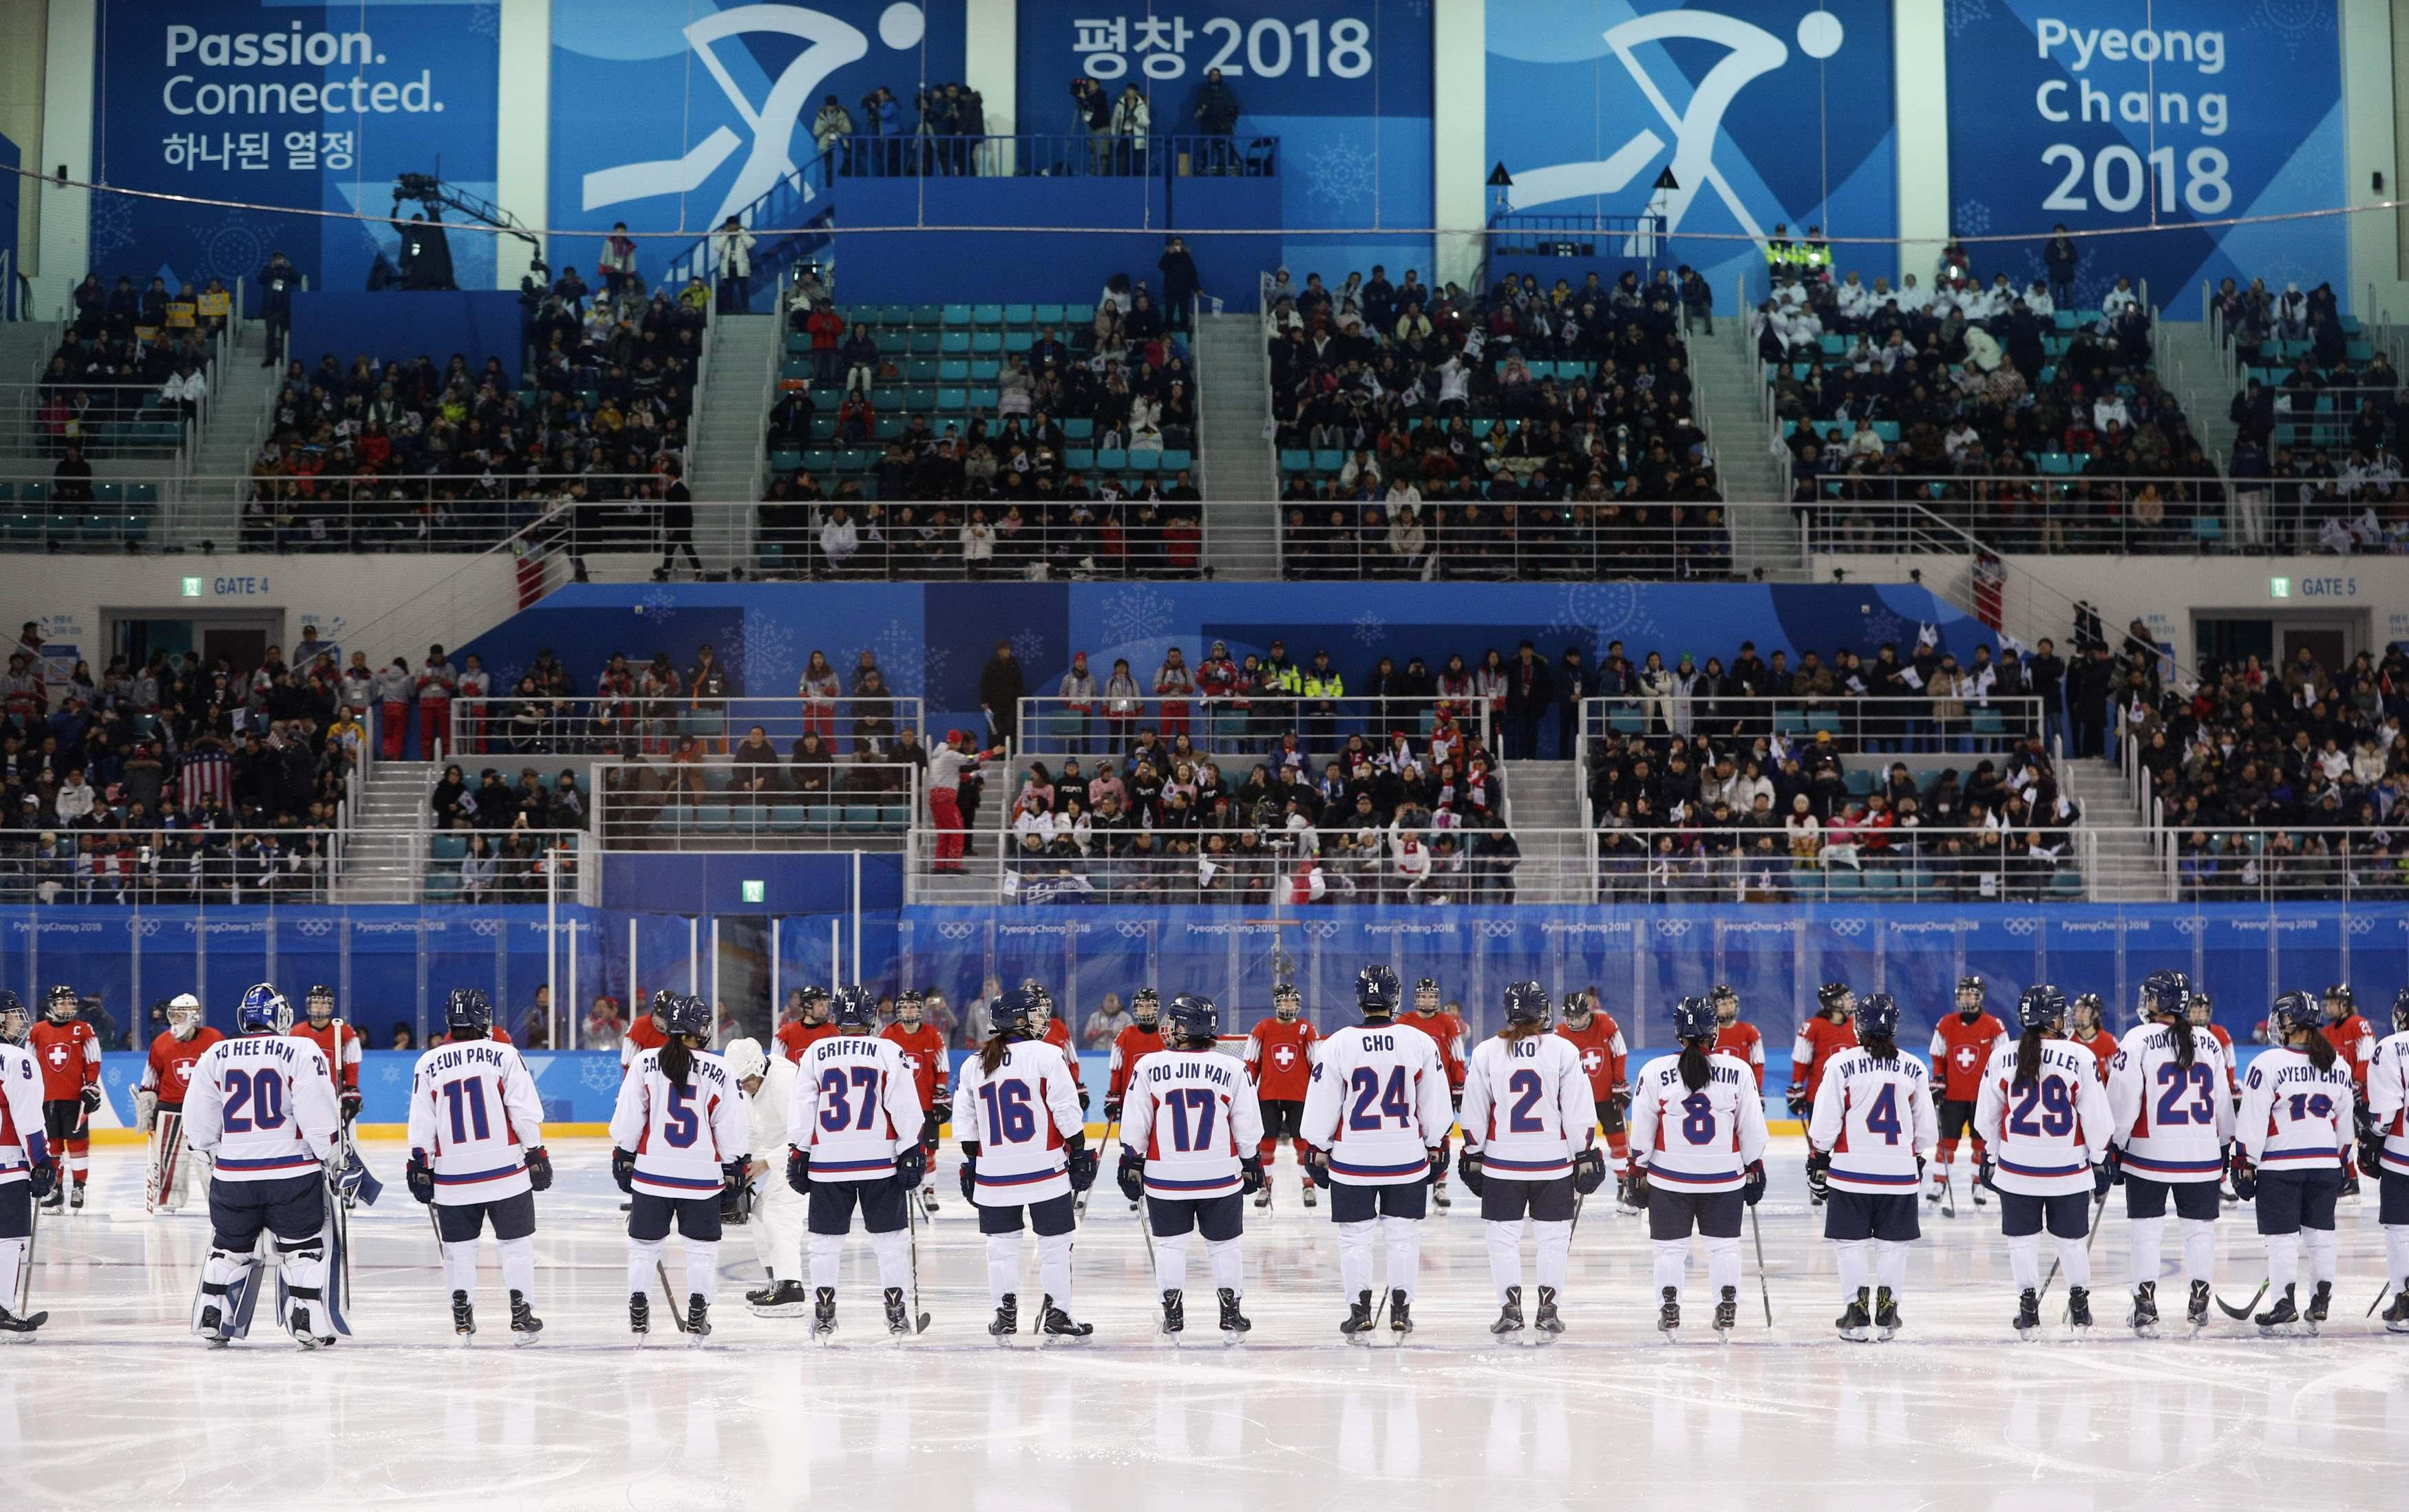 (FOTO) ISTORIJA U PJONGČANGU! Hokejašice Južne i Severne Koreje zajedno na ledu!